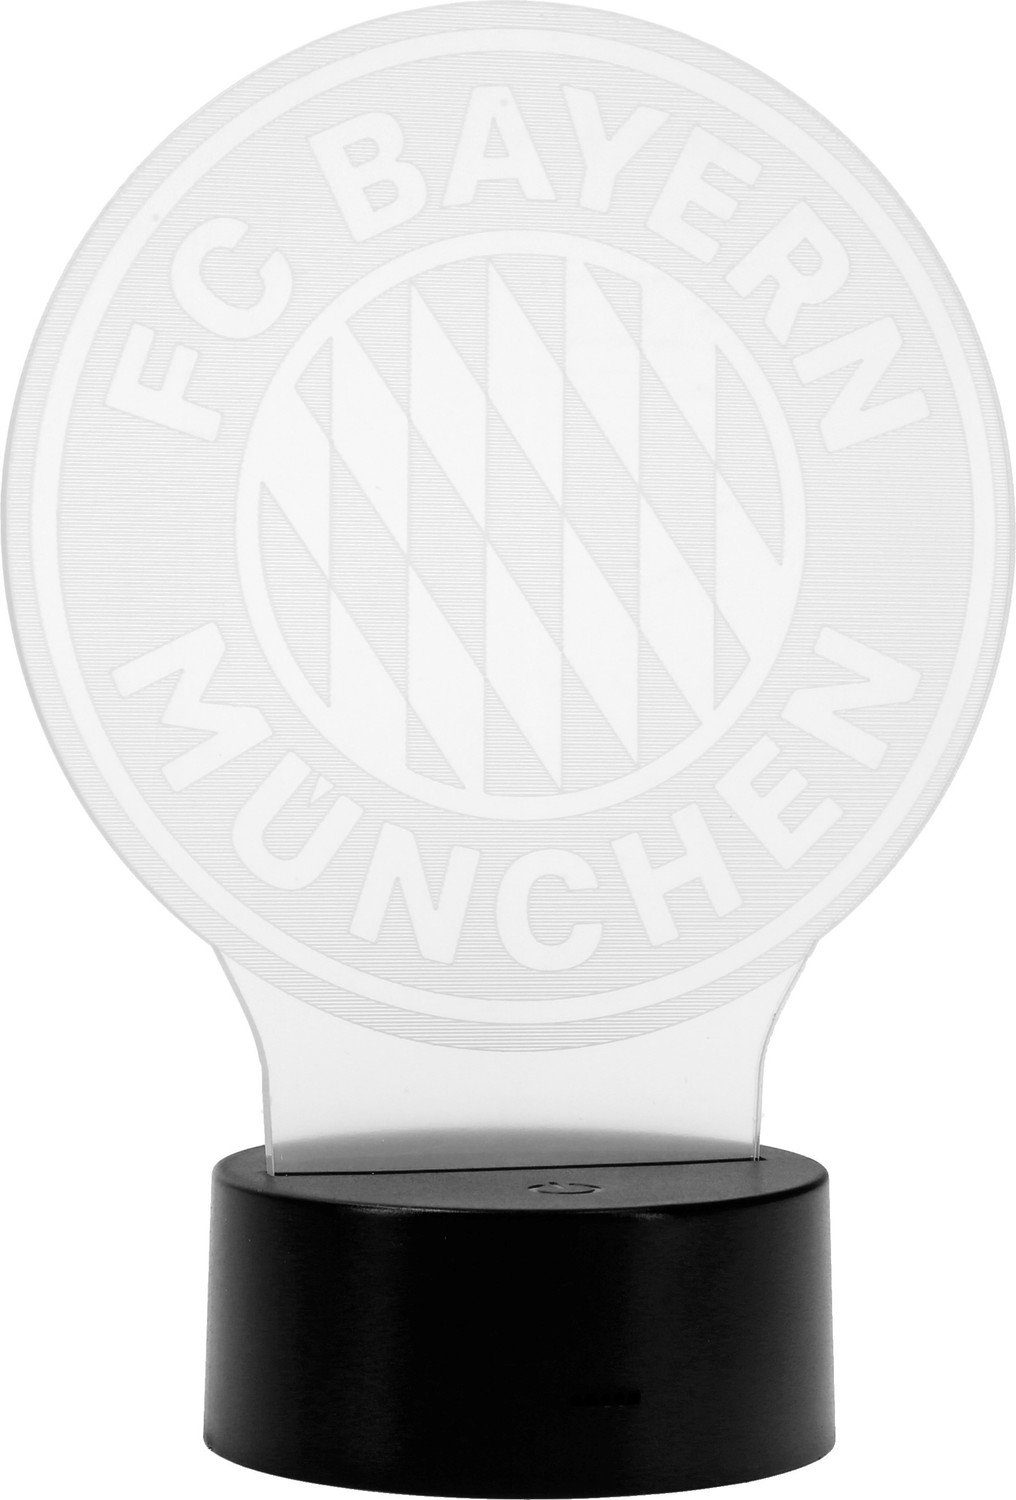 FC Bayern München Logo Bayern München - Tischleuchte LED FC LED